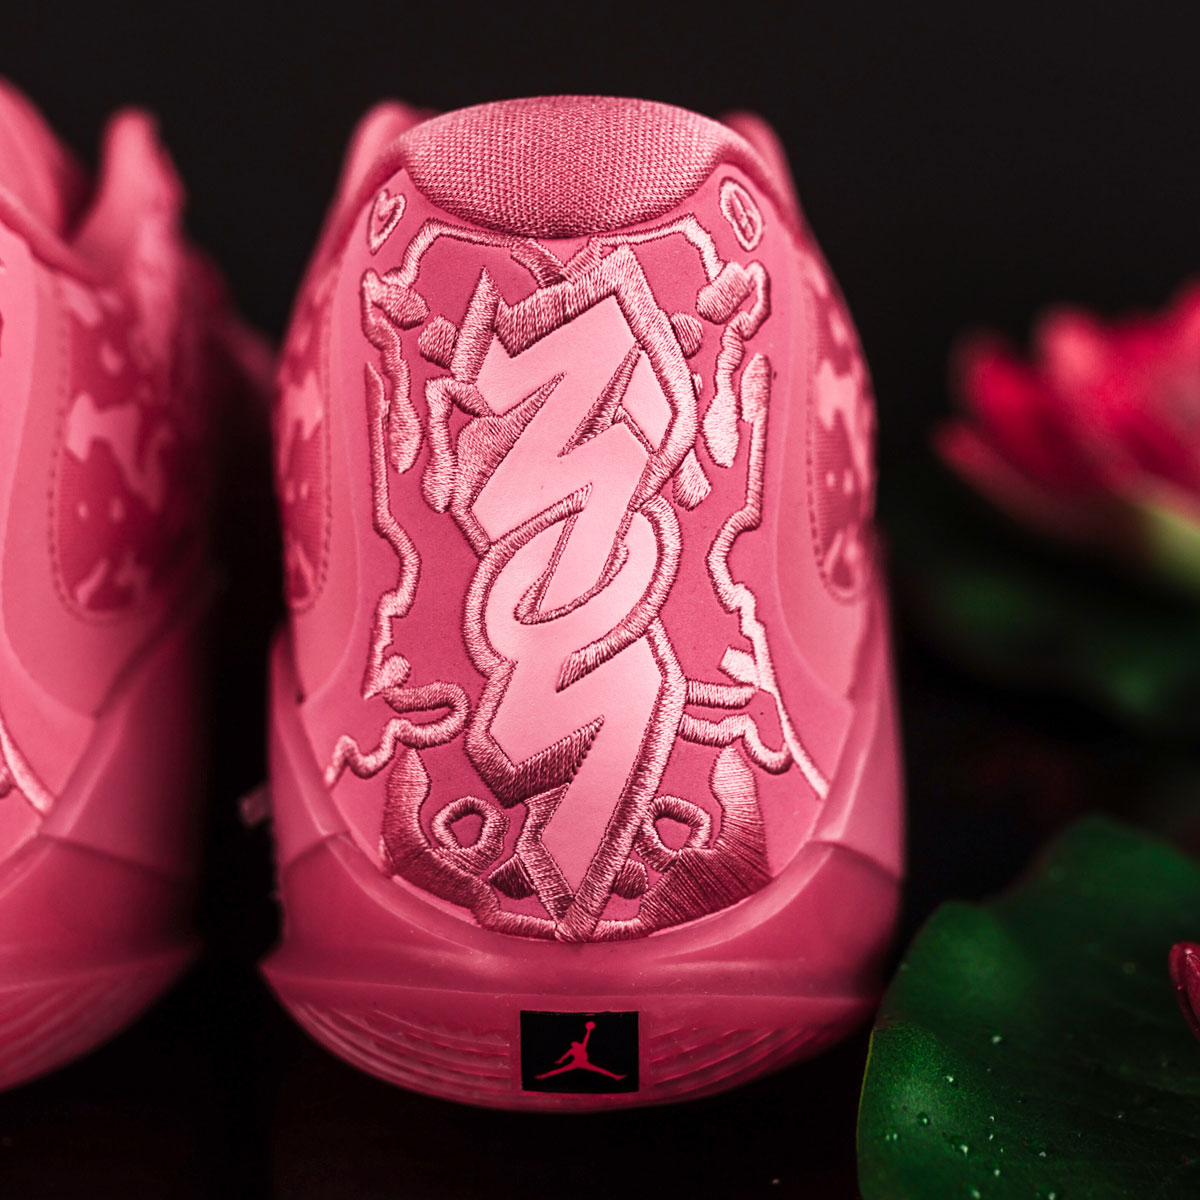 Nigel Sylvester × Nike Claquette Jordan Sophia pour Femme Gris 29cm Pink Lotus Dr0675 600 Release Date 5